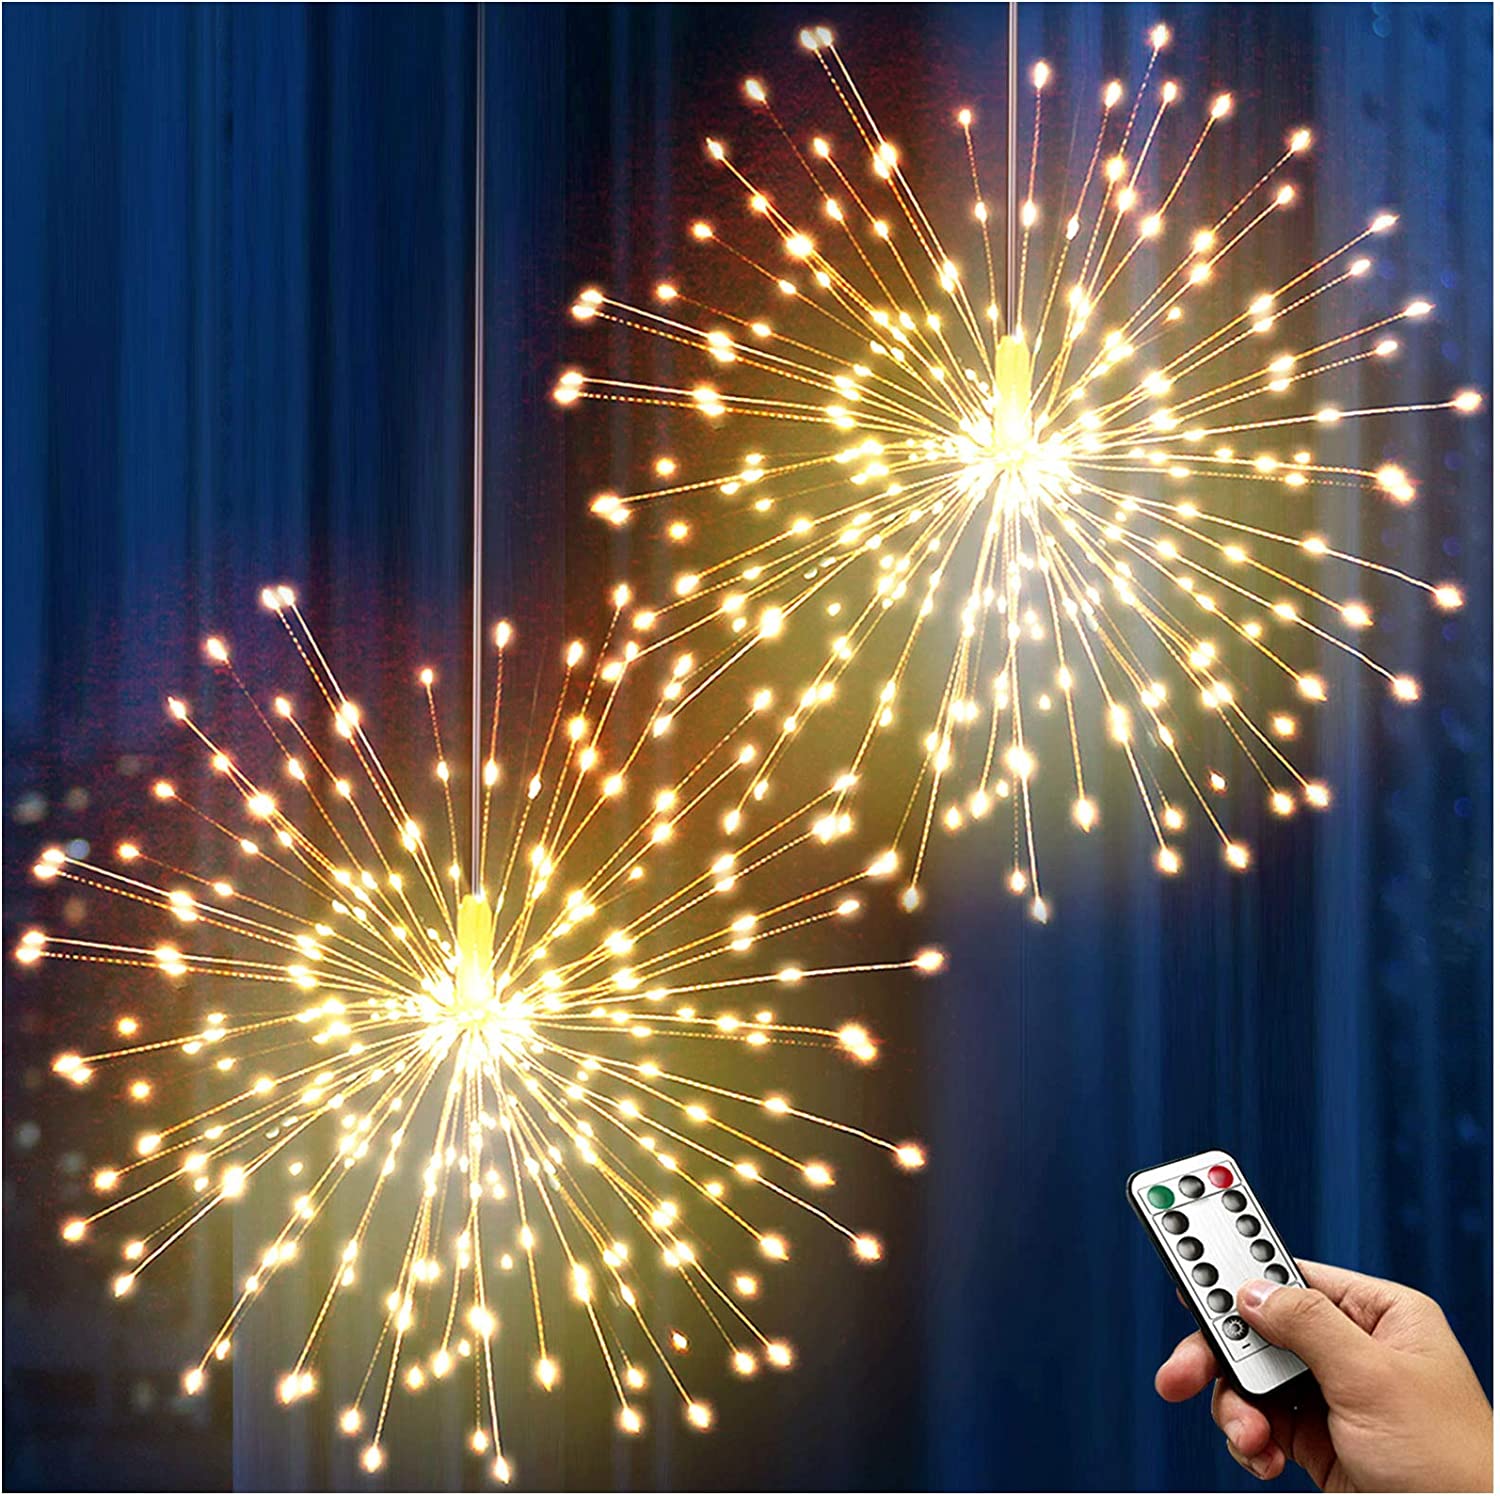 Euroelectronics DE LED hängende Starburst 3D Feuerwerk Licht dekorative LED Stern hängend –